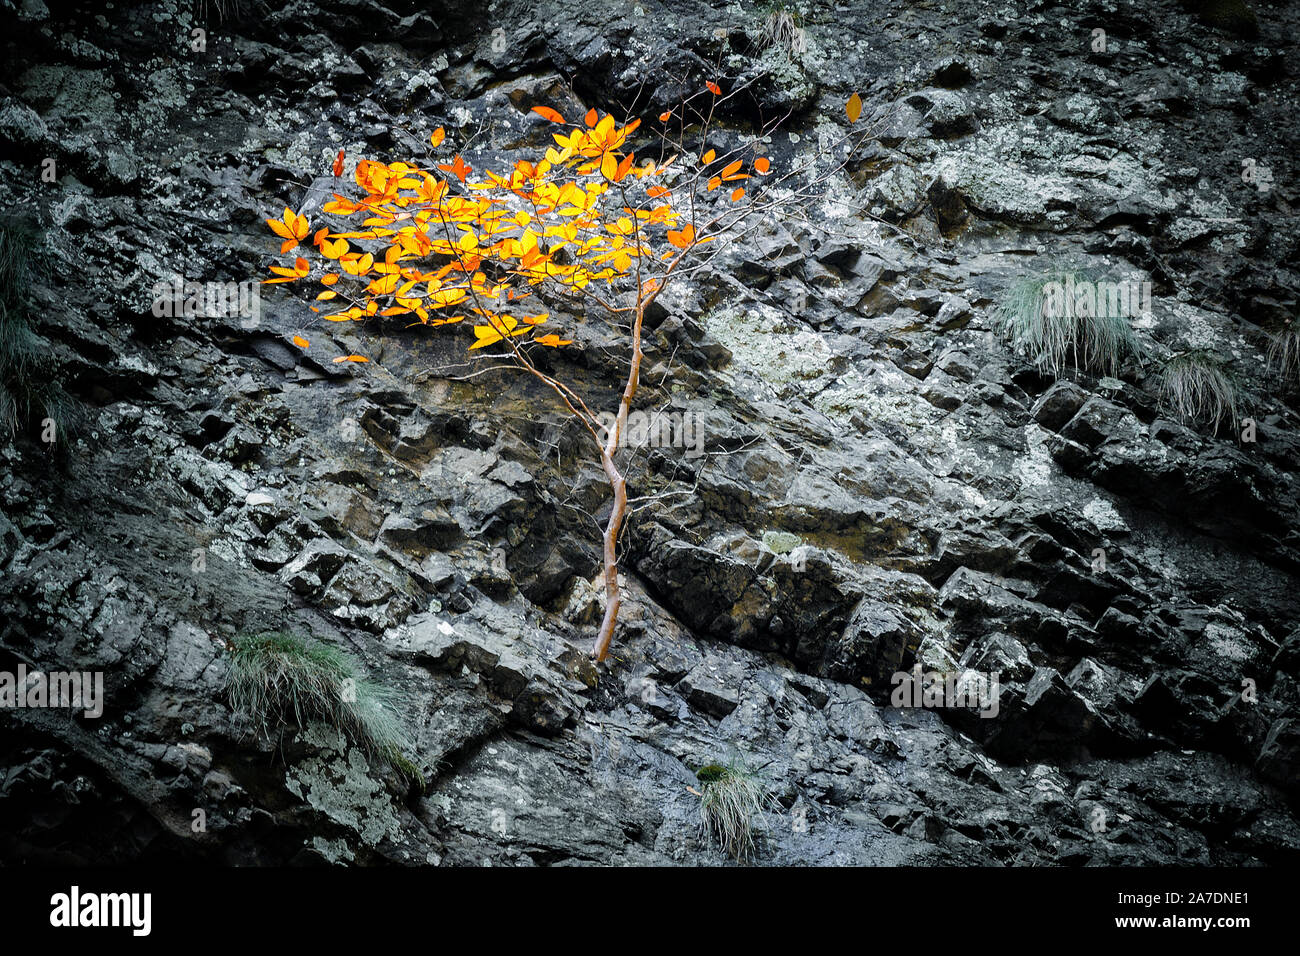 Albero con foglie d'arancio cresce su una pendenza in pietra di una scogliera. Il concetto di superare le difficoltà e la sopravvivenza in condizioni difficili. Foto Stock